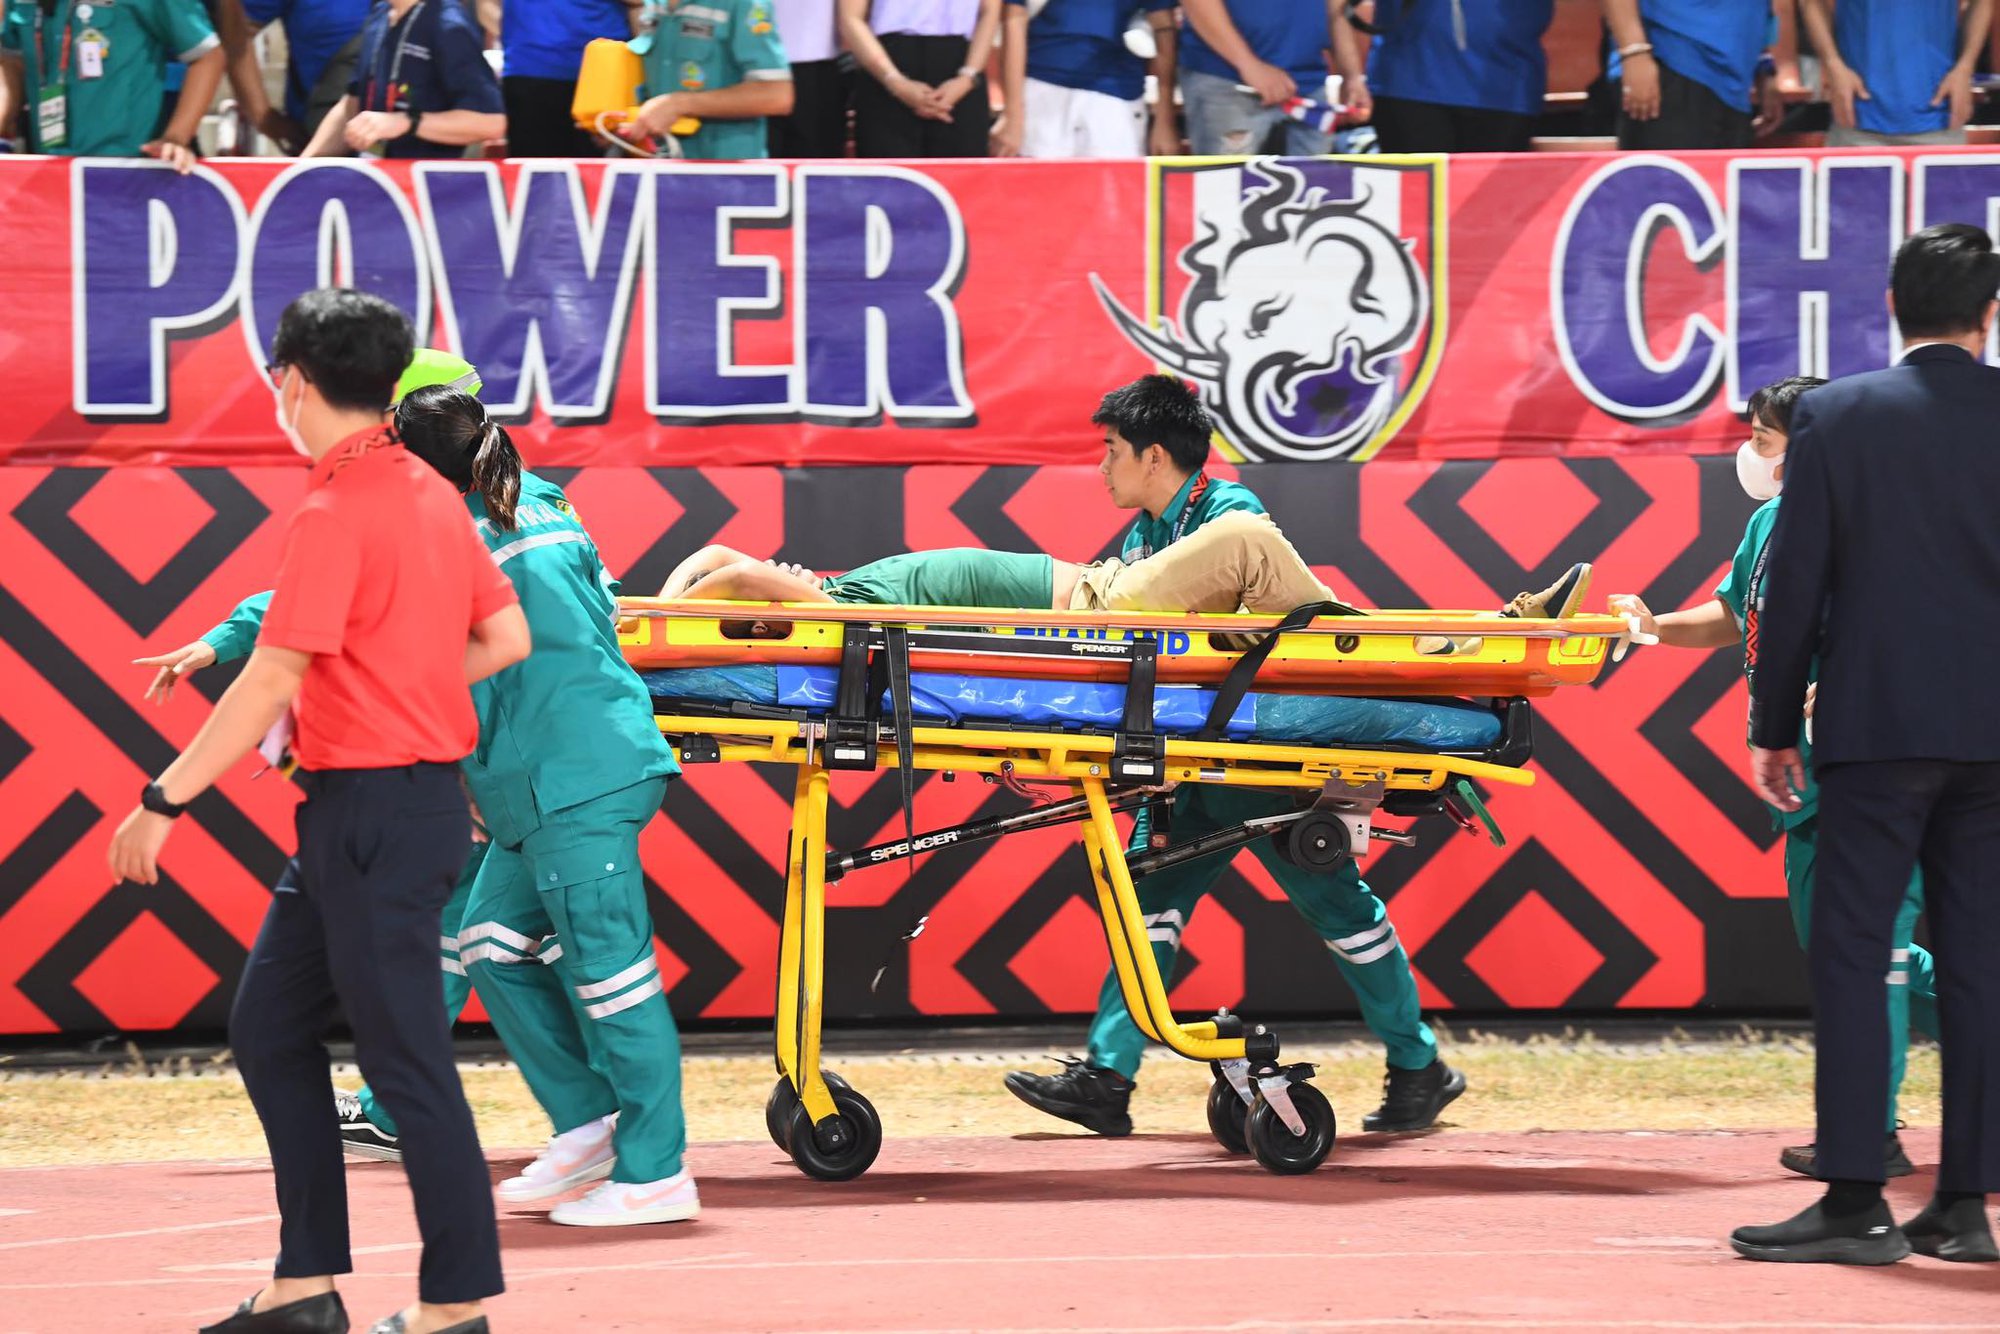 CĐV Thái Lan bất ngờ bị ngất, phải đi cấp cứu trong trận chung kết AFF Cup 2022 - Ảnh 3.